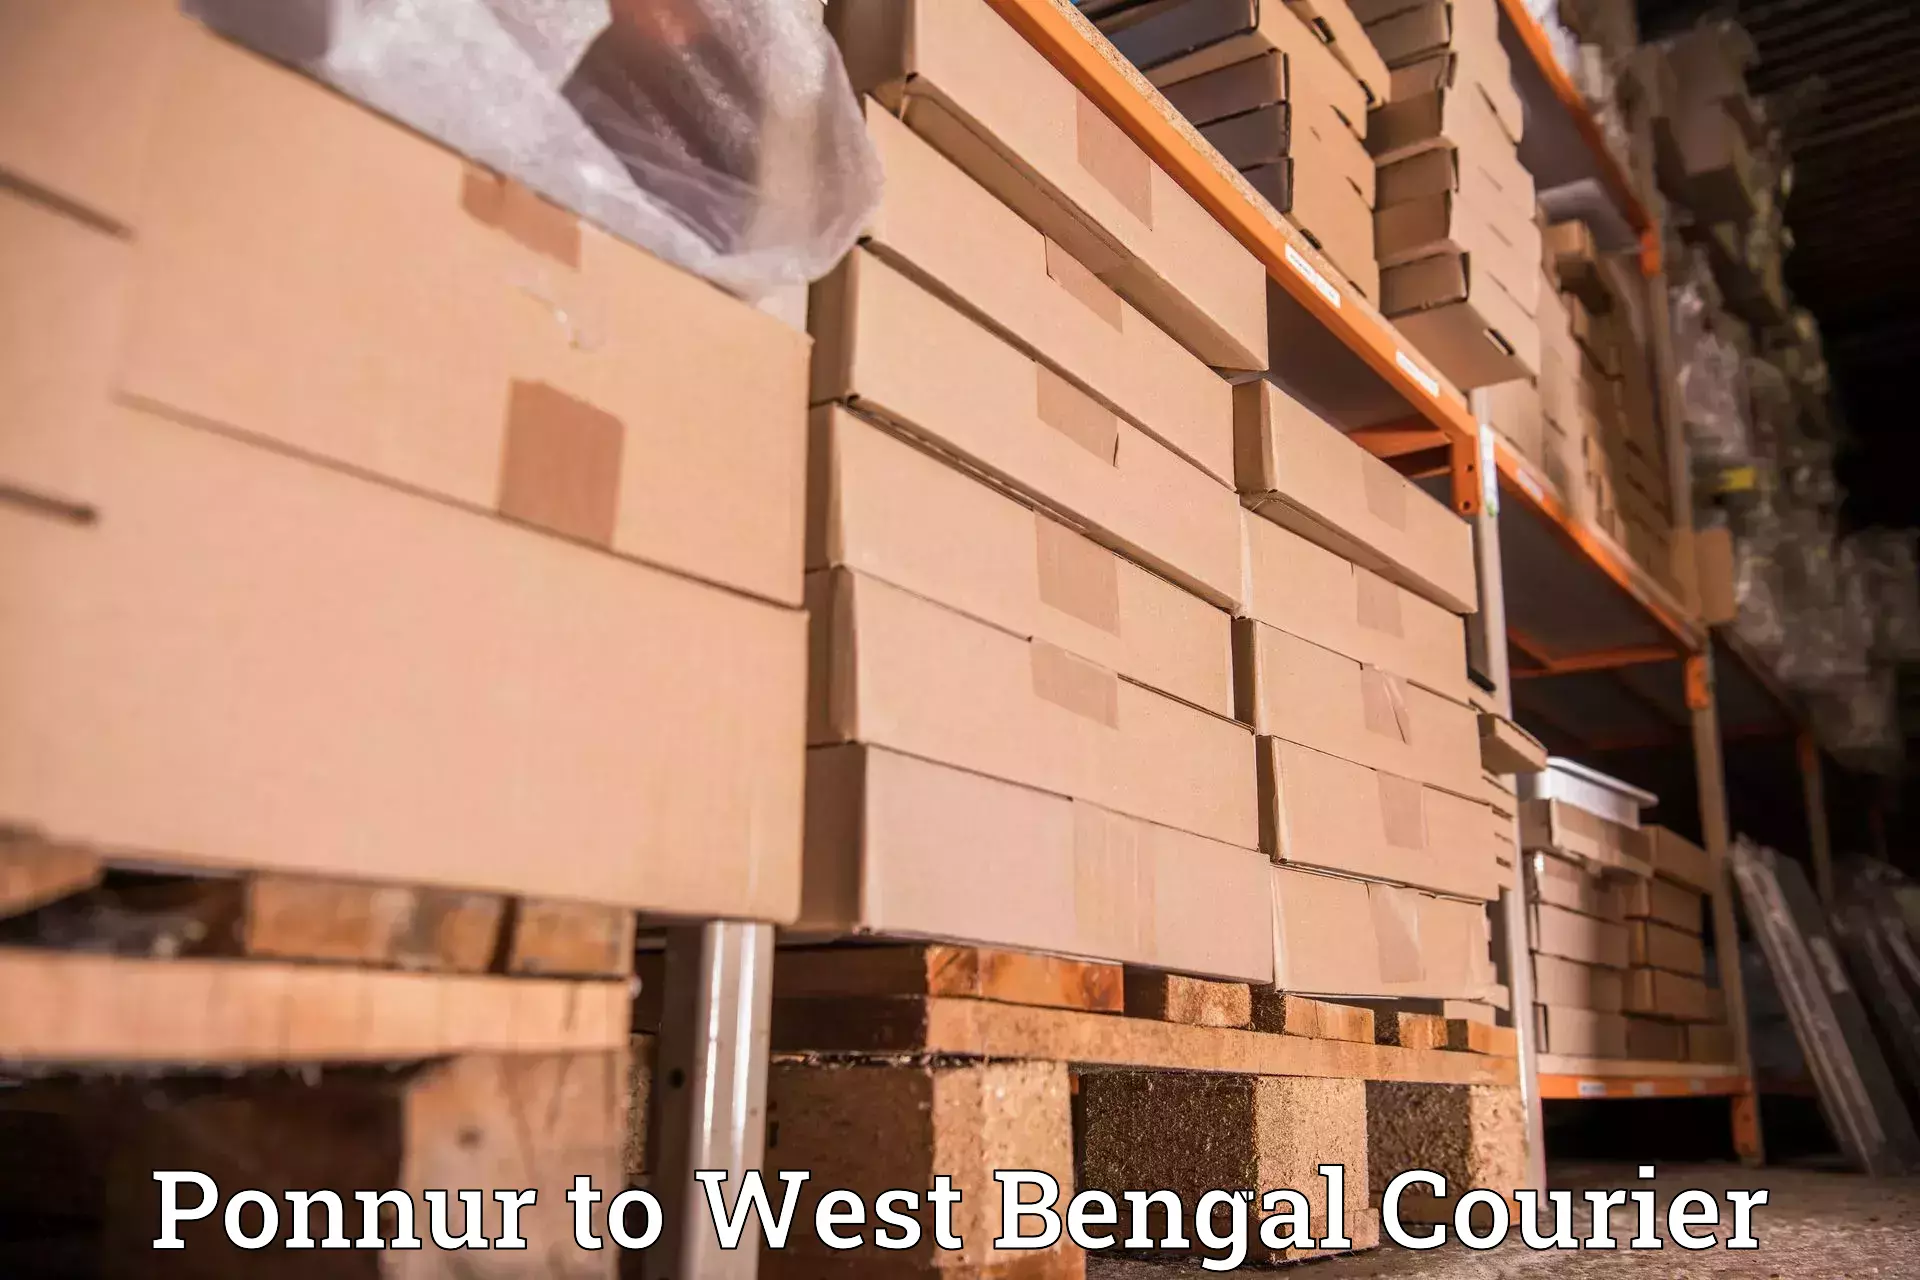 User-friendly courier app Ponnur to Tista Bazar